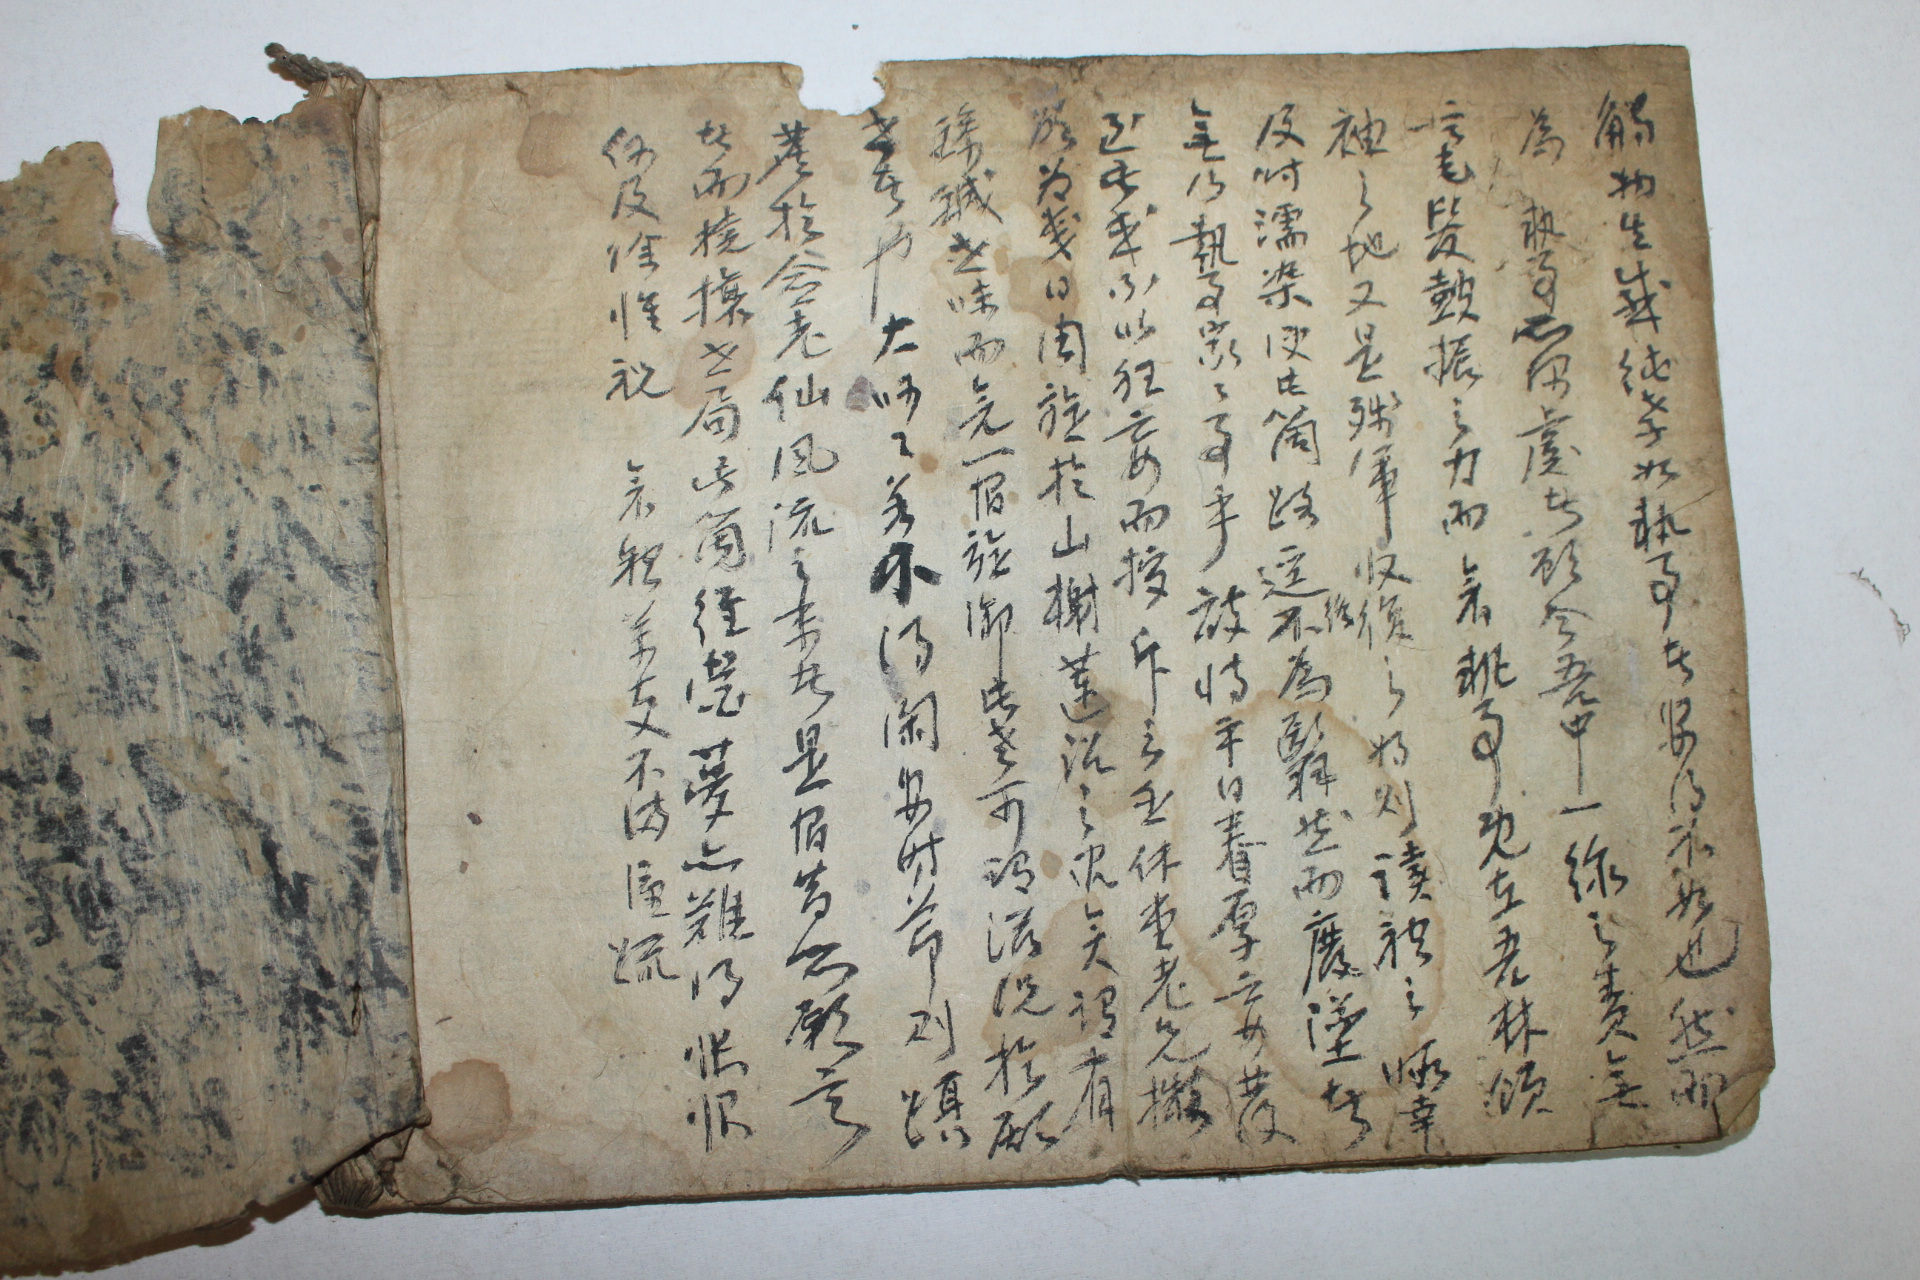 조선시대 고필사본 중대사잡영(中臺寺雜詠) 1책